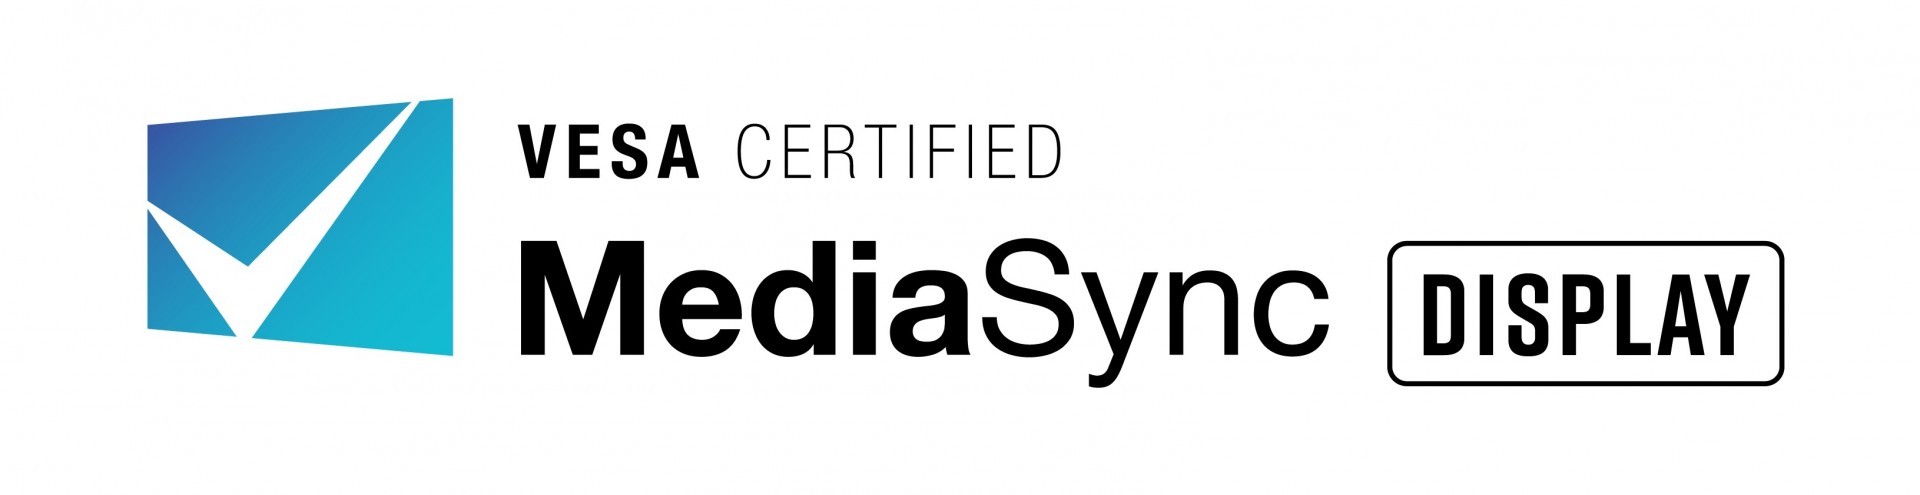 美国视讯电子标准协会 VESA 针对游戏与多媒体萤幕公开标章认证 方便玩家辨识